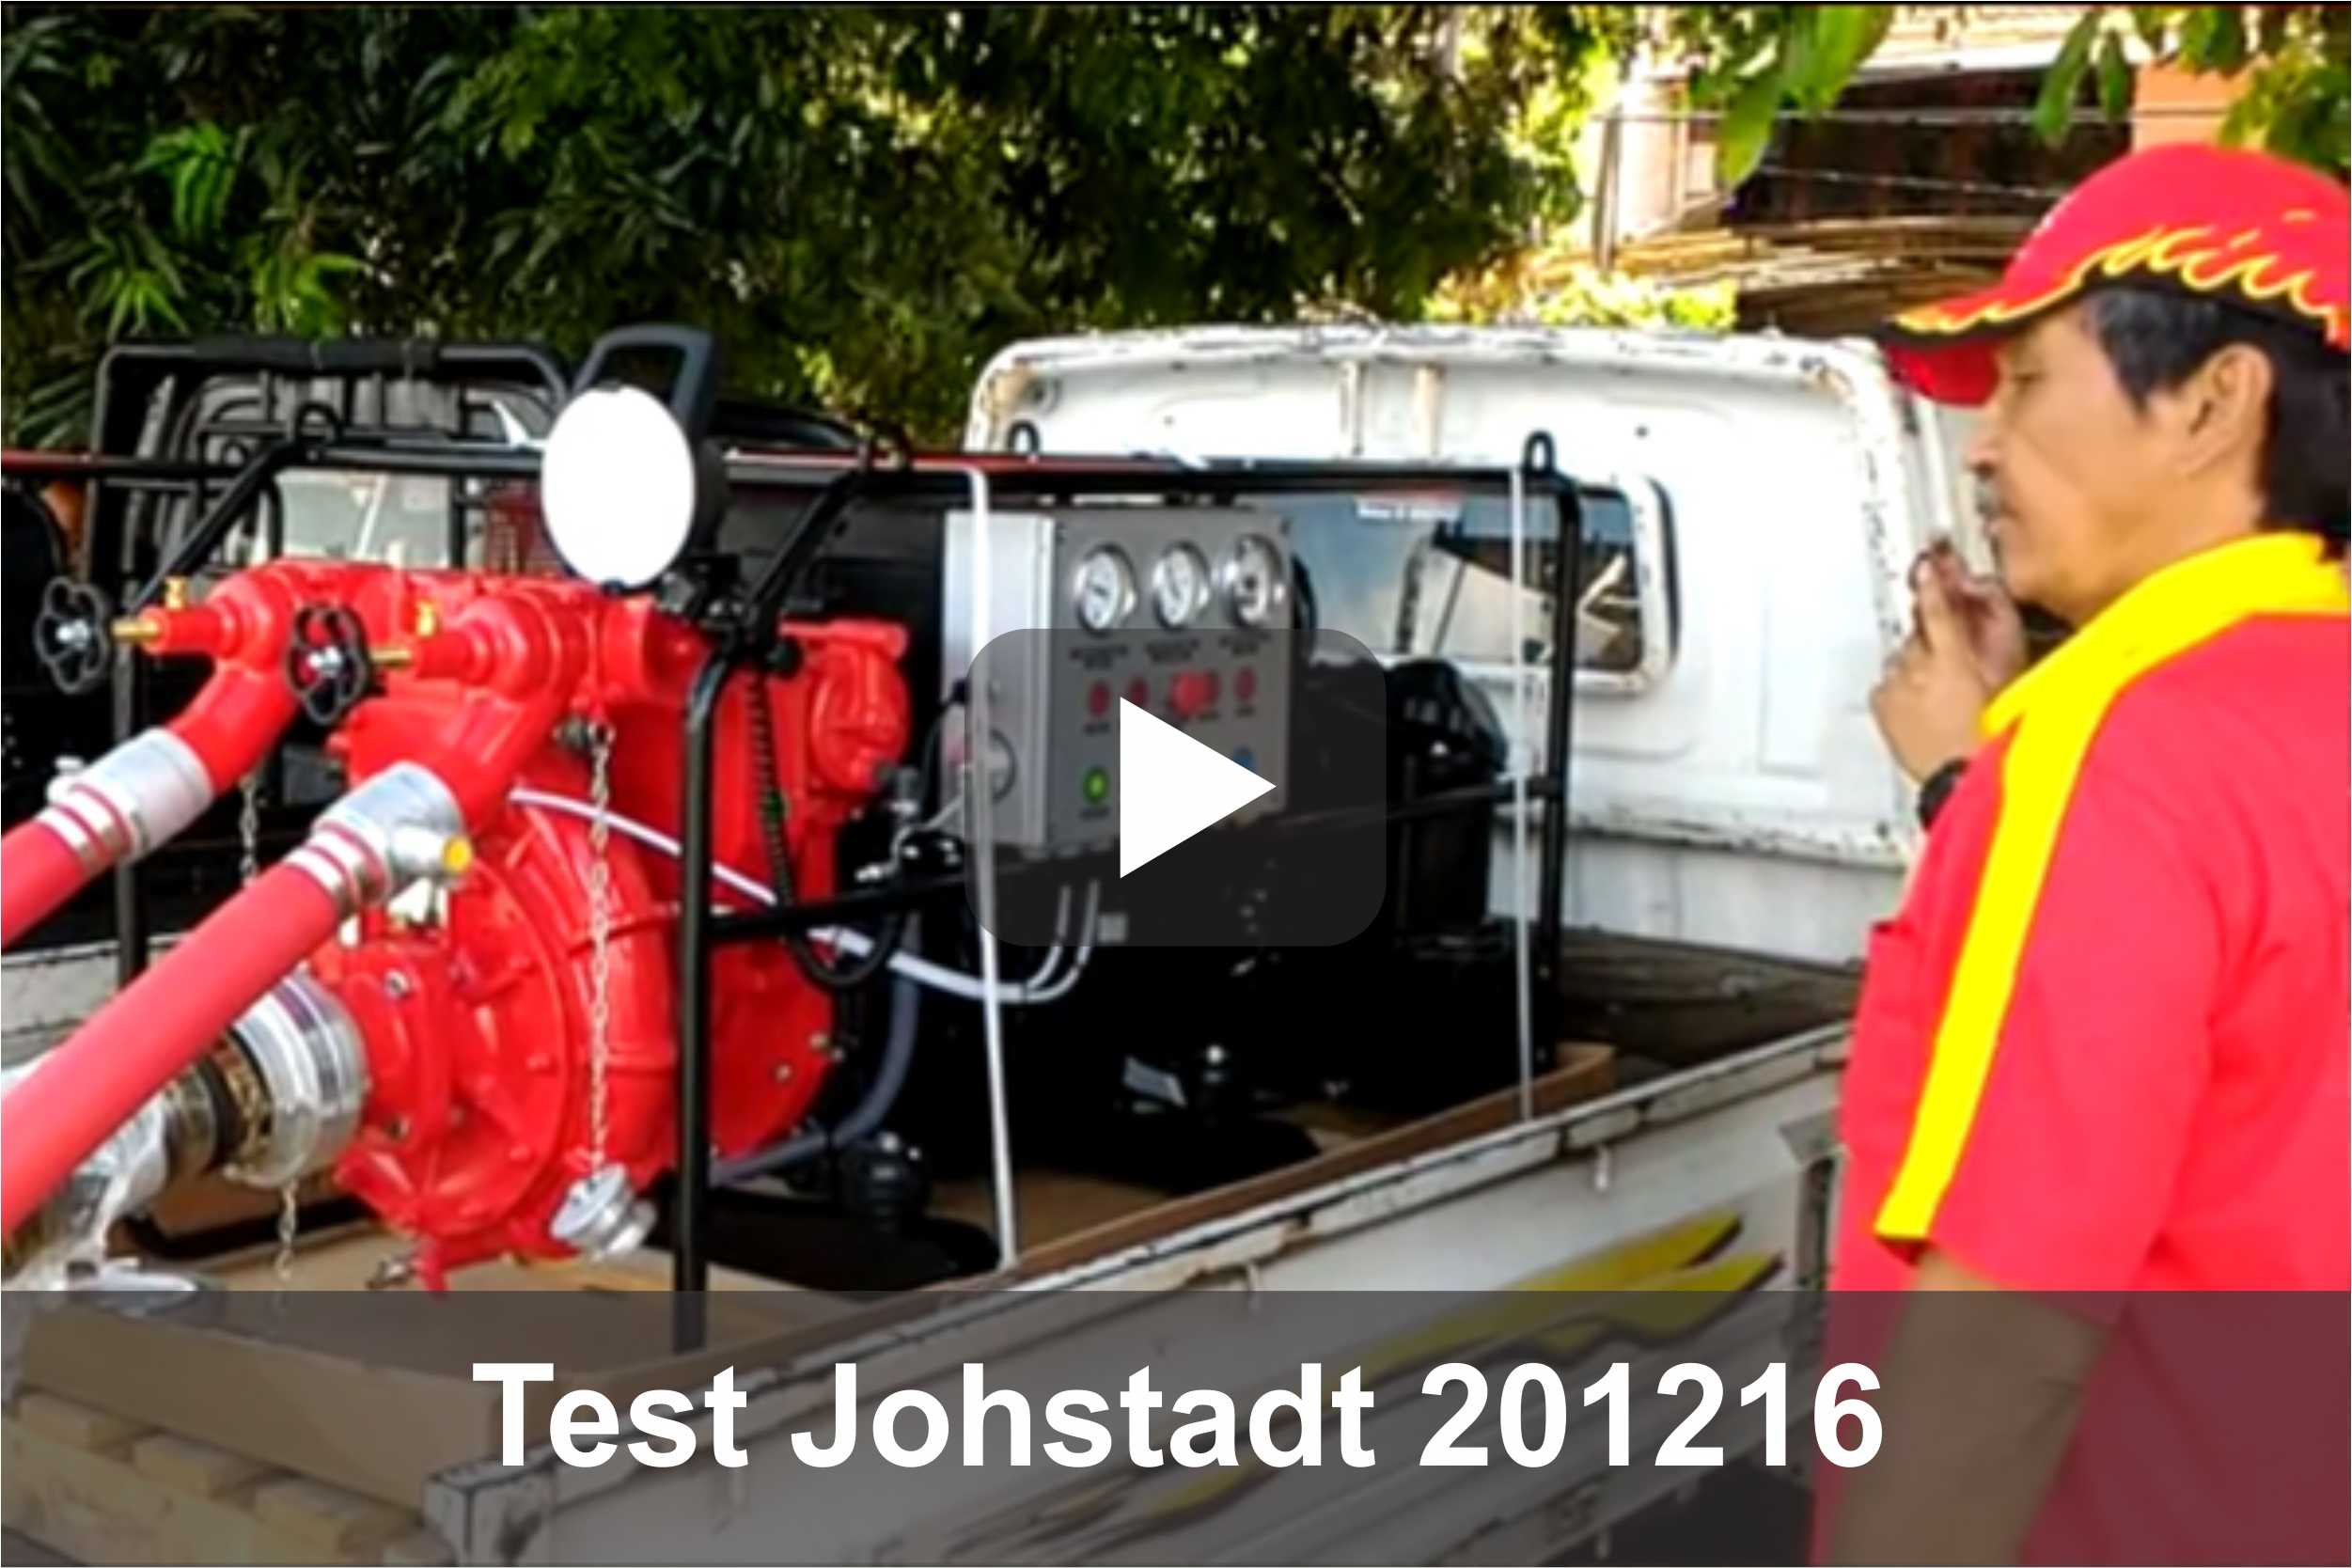 test johstadt 201216 2